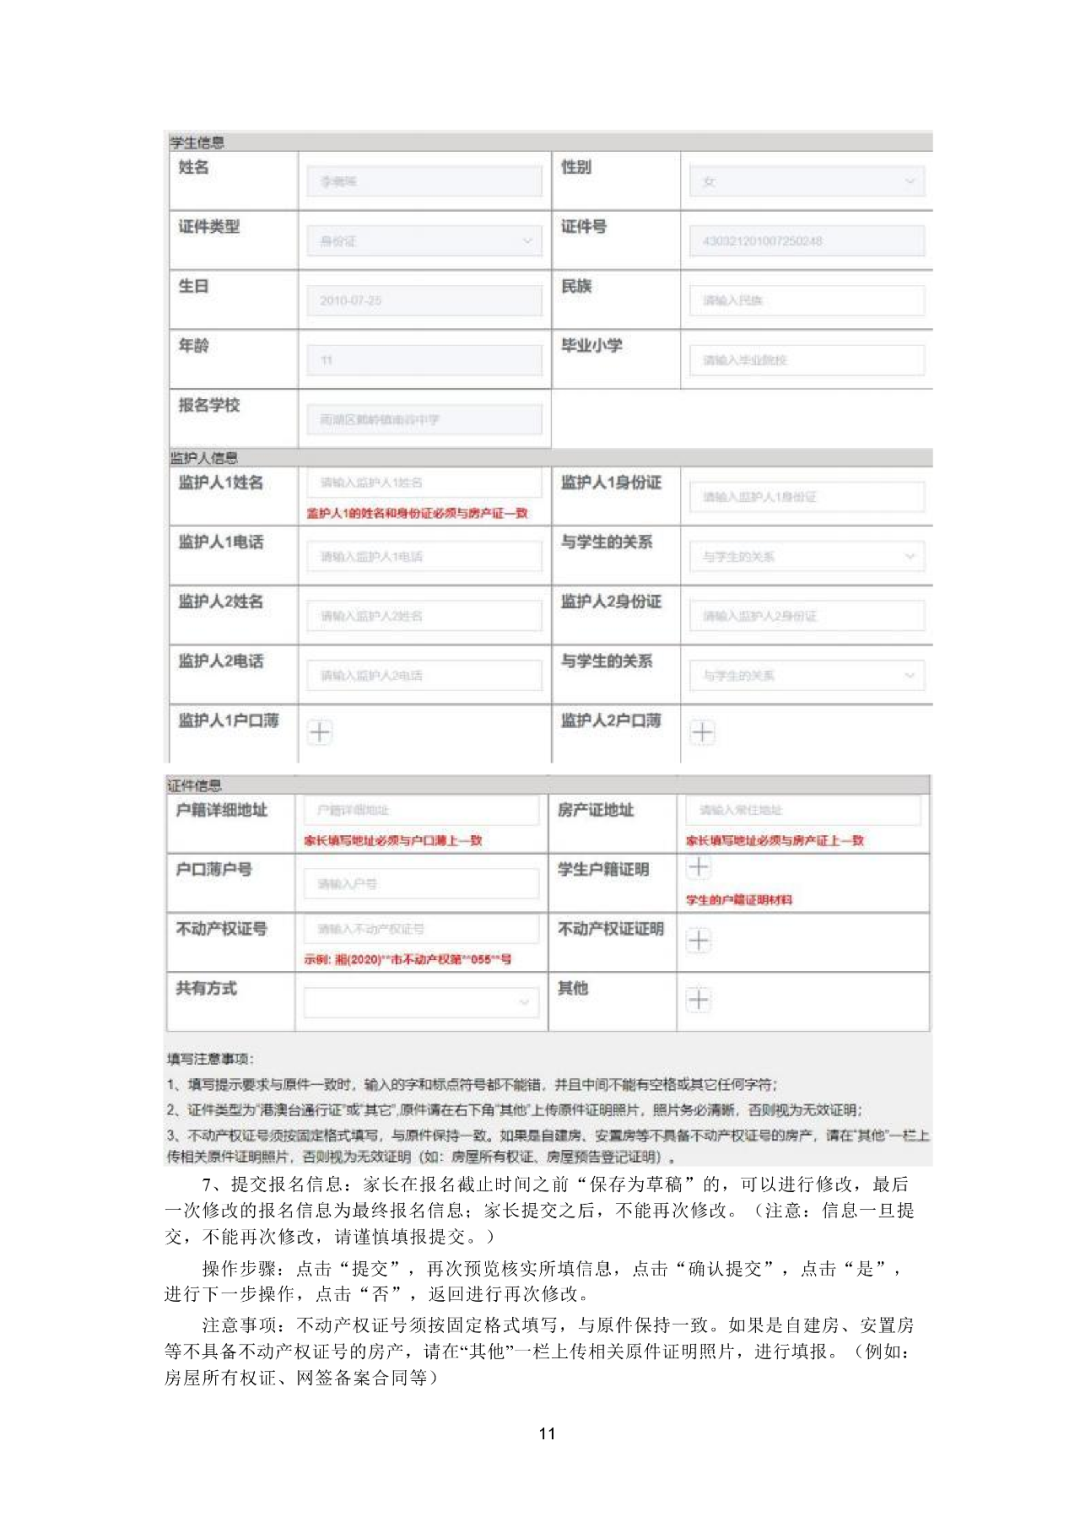 湘潭家长 义务教育学校招生网上报名操作流程指南来了